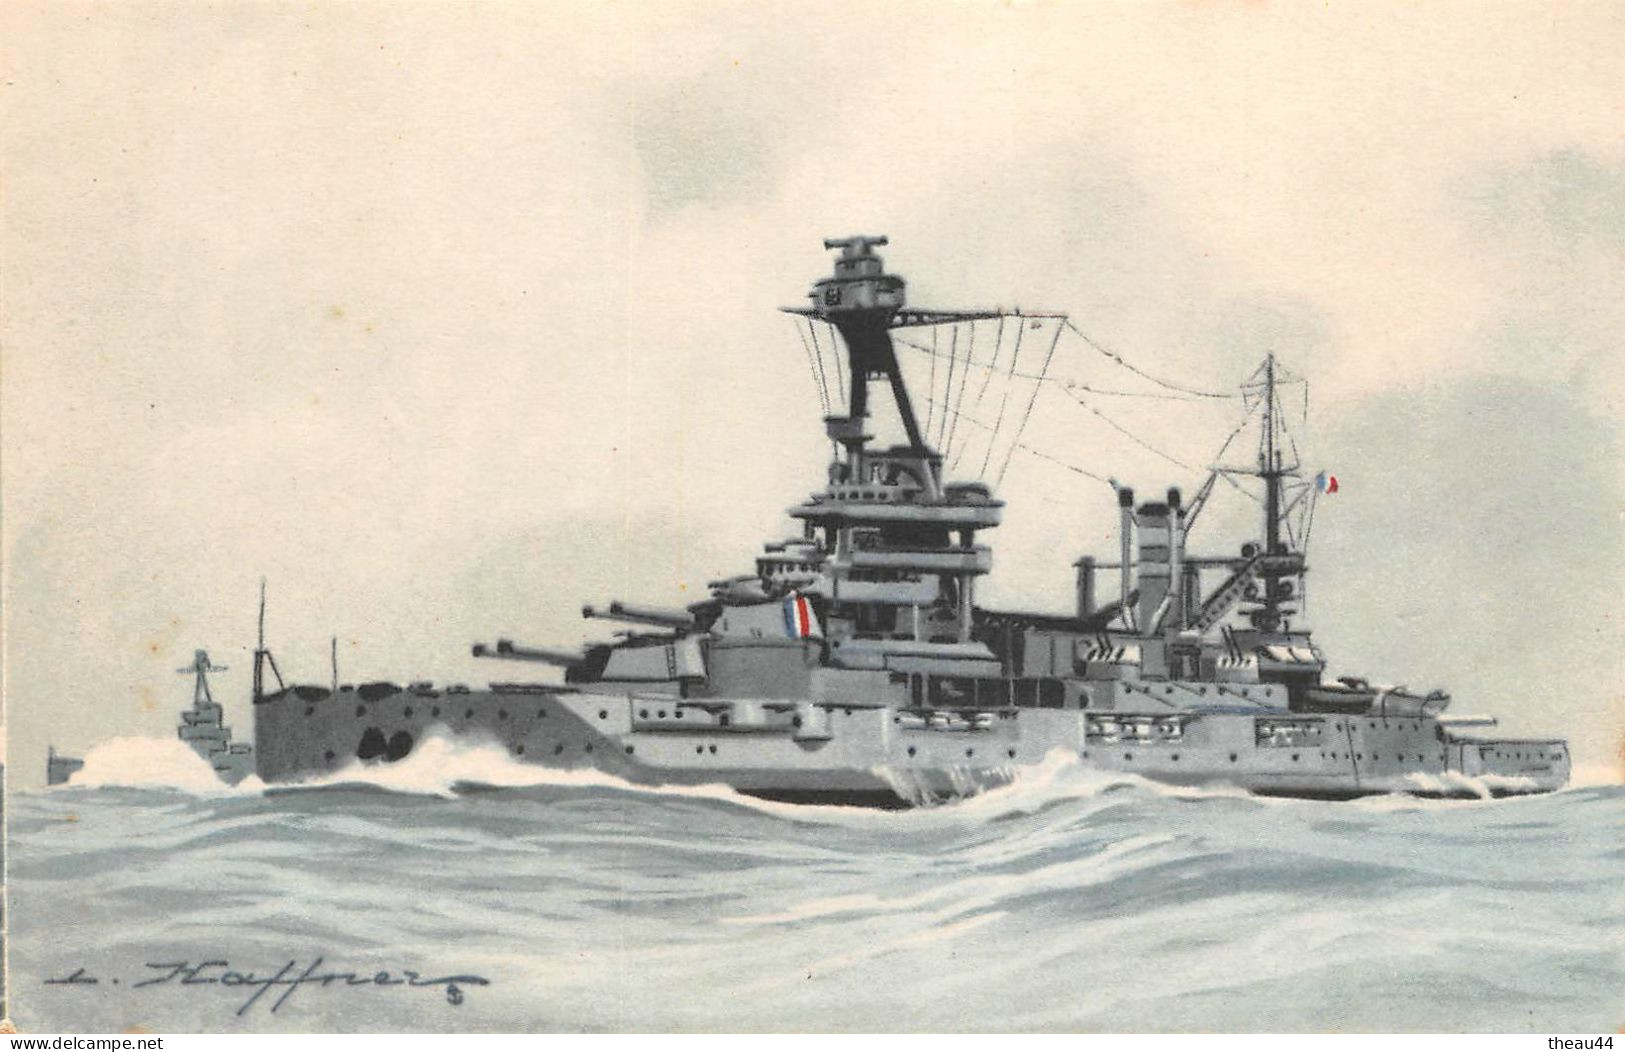 ¤¤   -   Lot de 8 Cartes de l'Illustrateur " HAFFNER "   -   Bateaux de Guerre  -  Cuirassé, Croiseur, Torpilleur ......